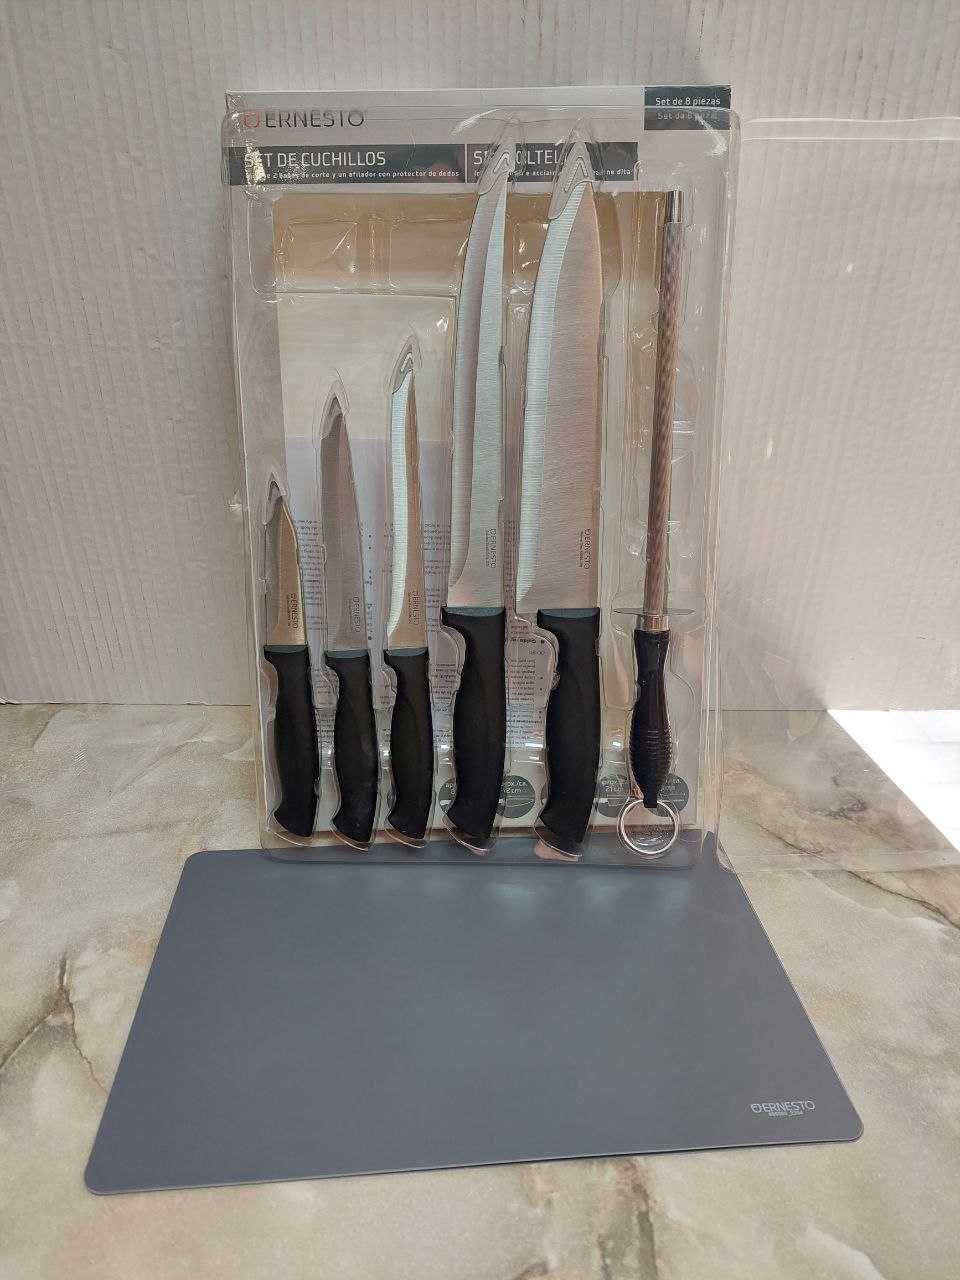 Набір ножів Ernesto
5 ножів+точило+2 дощечки
Виробник Німеччина